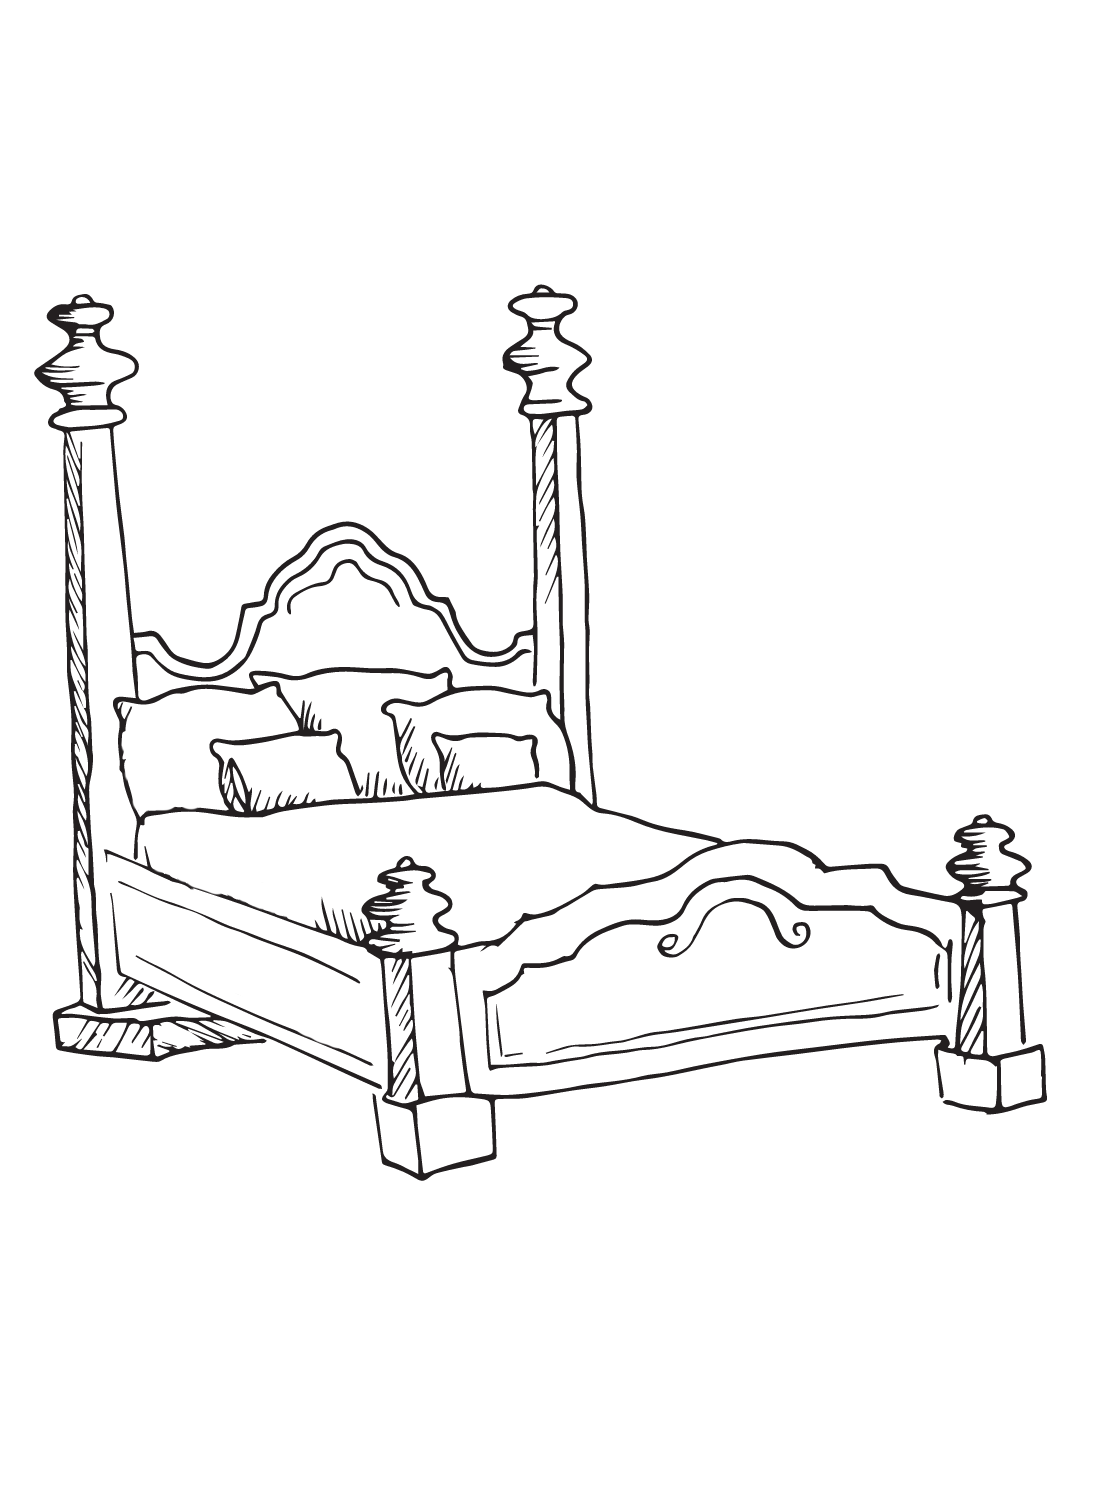 Кровать, распечатанная с кровати